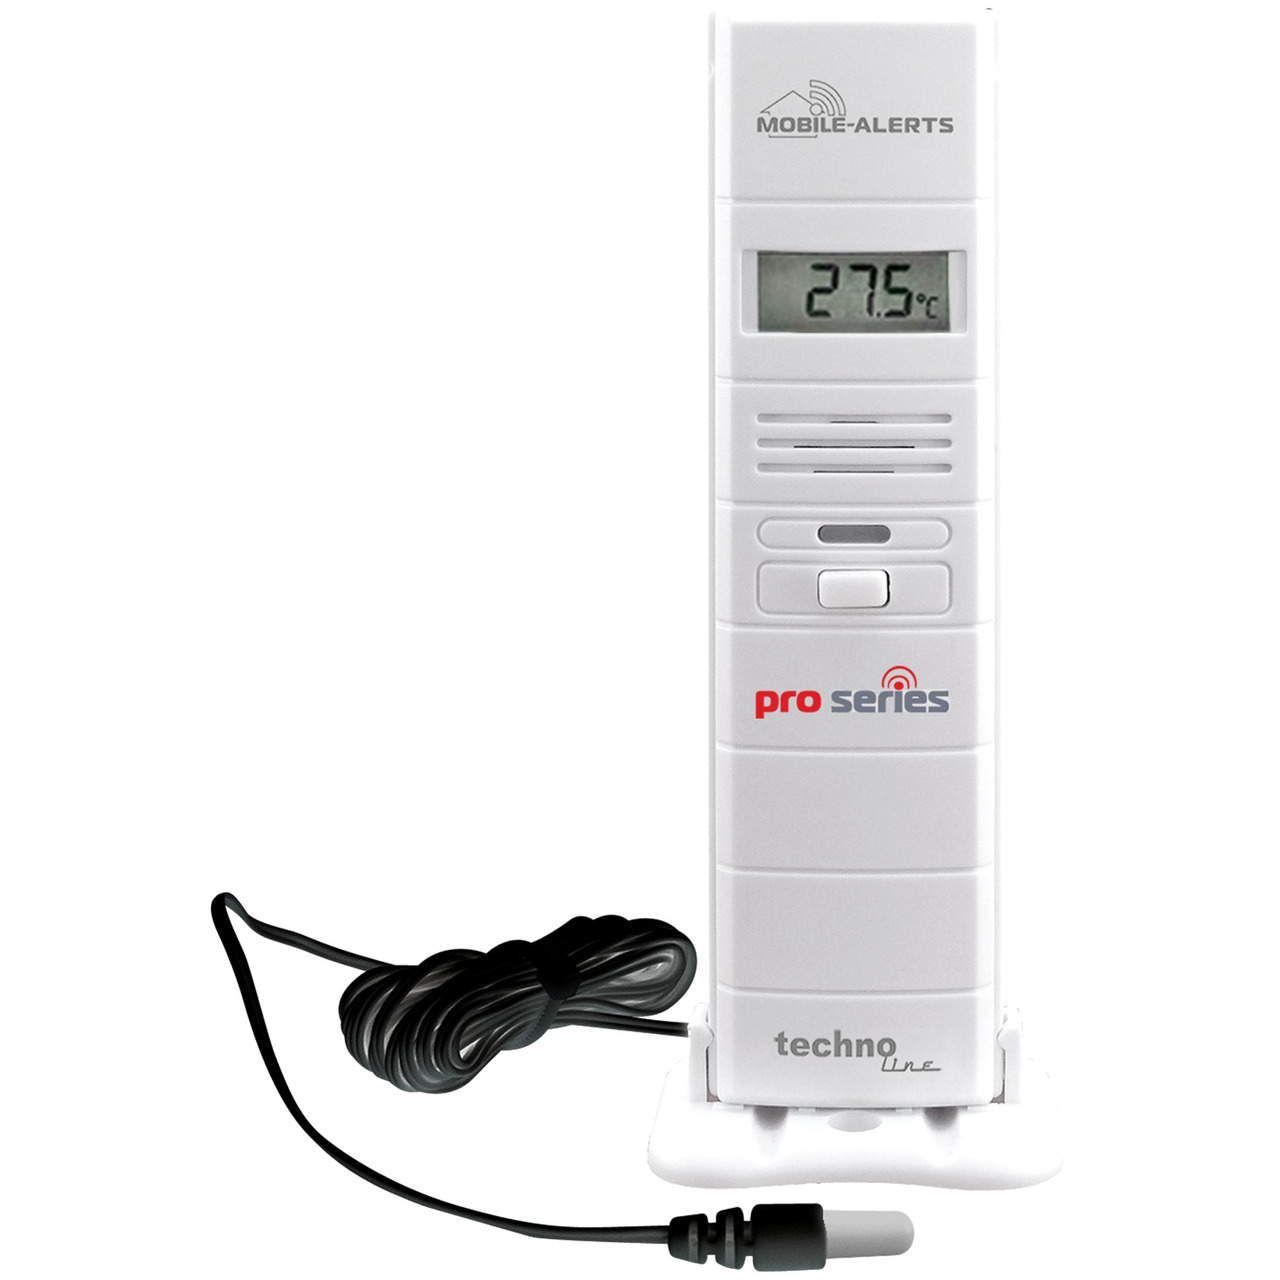 Mobile Alerts Thermo-Hygrosensor MA10320 (PRO) mit zusätzlichem Temperaturfühler (Kabelsonde)